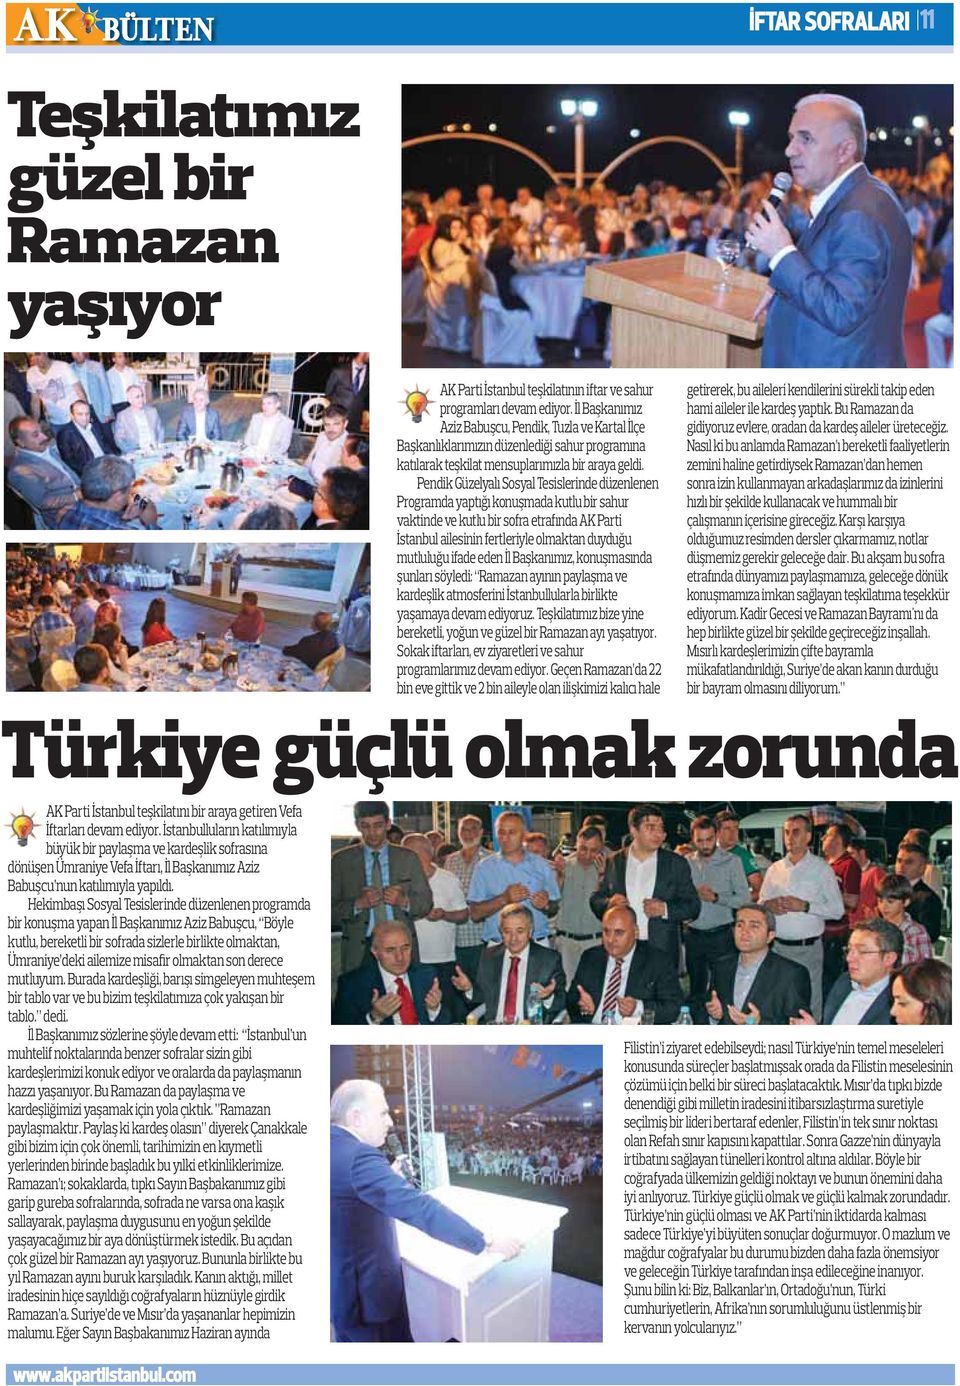 Pendik Güzelyalı Sosyal Tesislerinde düzenlenen Programda yaptığı konuşmada kutlu bir sahur vaktinde ve kutlu bir sofra etrafında AK Parti İstanbul ailesinin fertleriyle olmaktan duyduğu mutluluğu